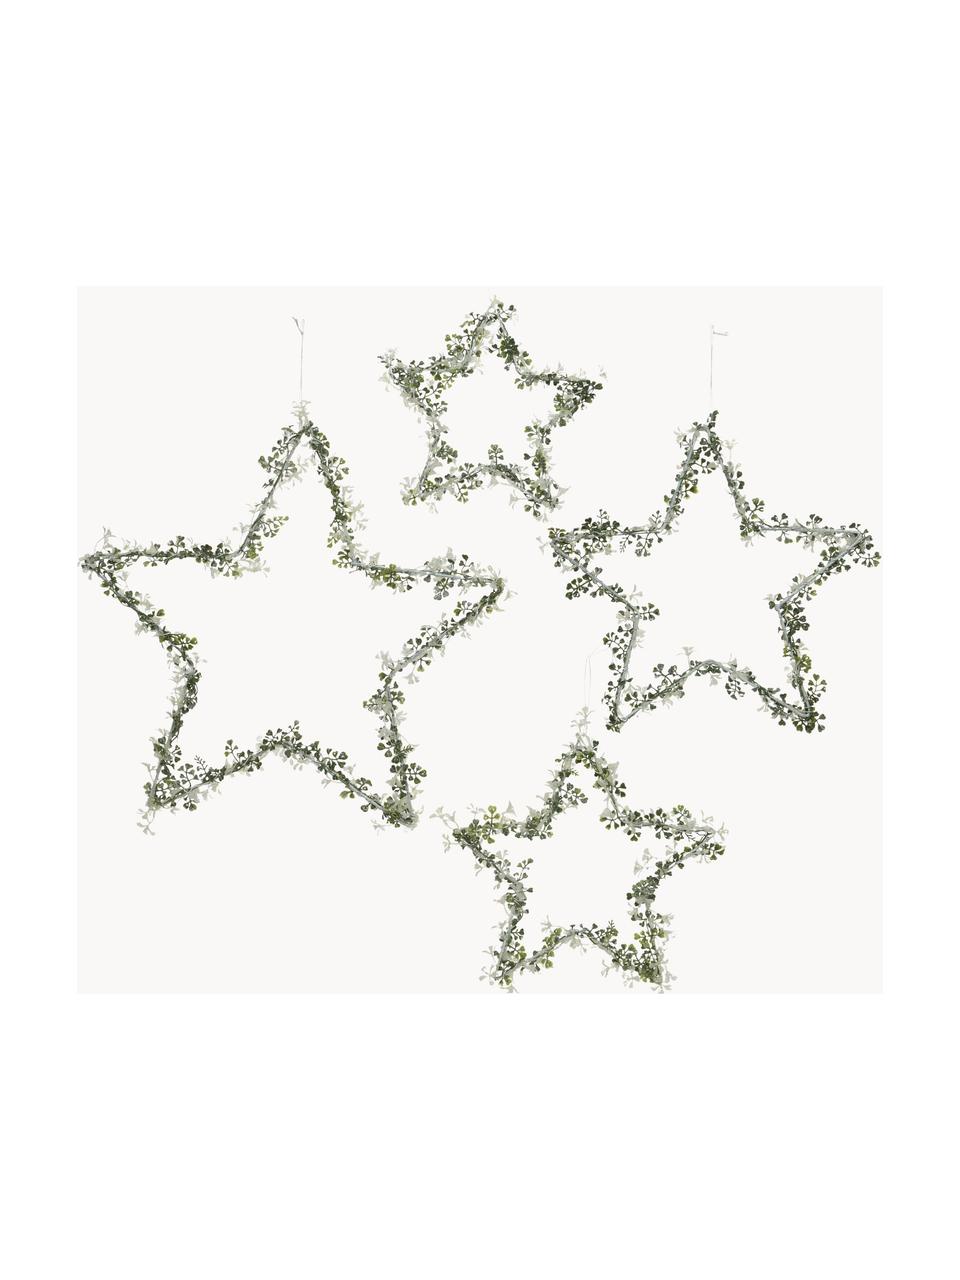 Adornos para colgar estrellas Stars, 4 uds., Metal, Verde, blanco, Set de diferentes tamaños